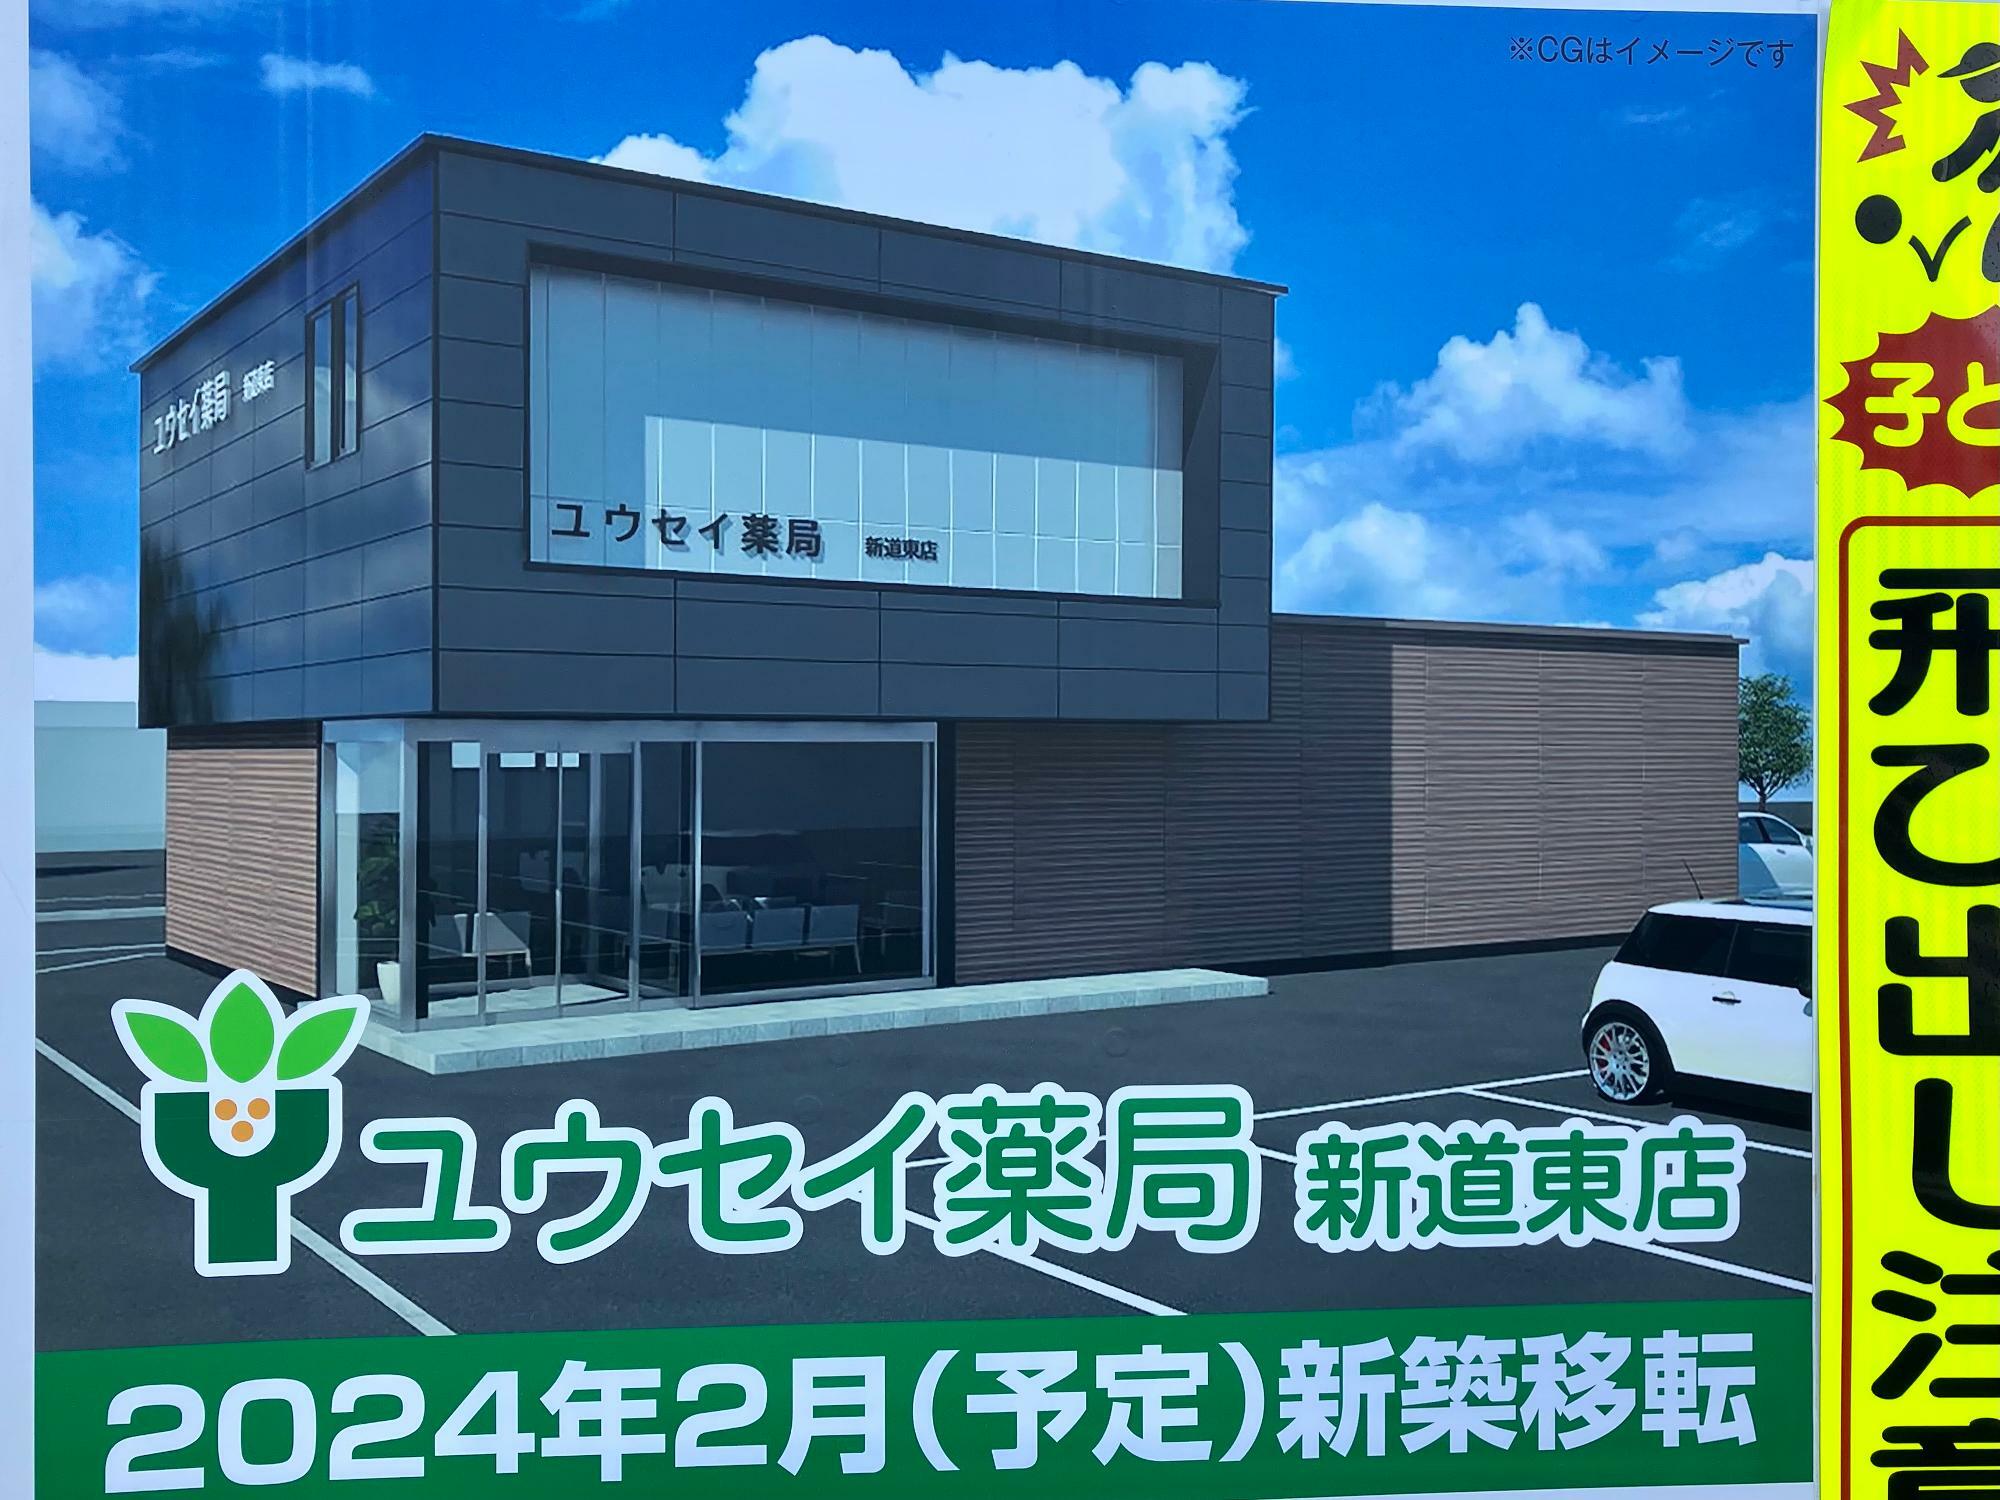 「ユウセイ薬局 新道東店」は、2024年2月（予定）で新築移転するようです。